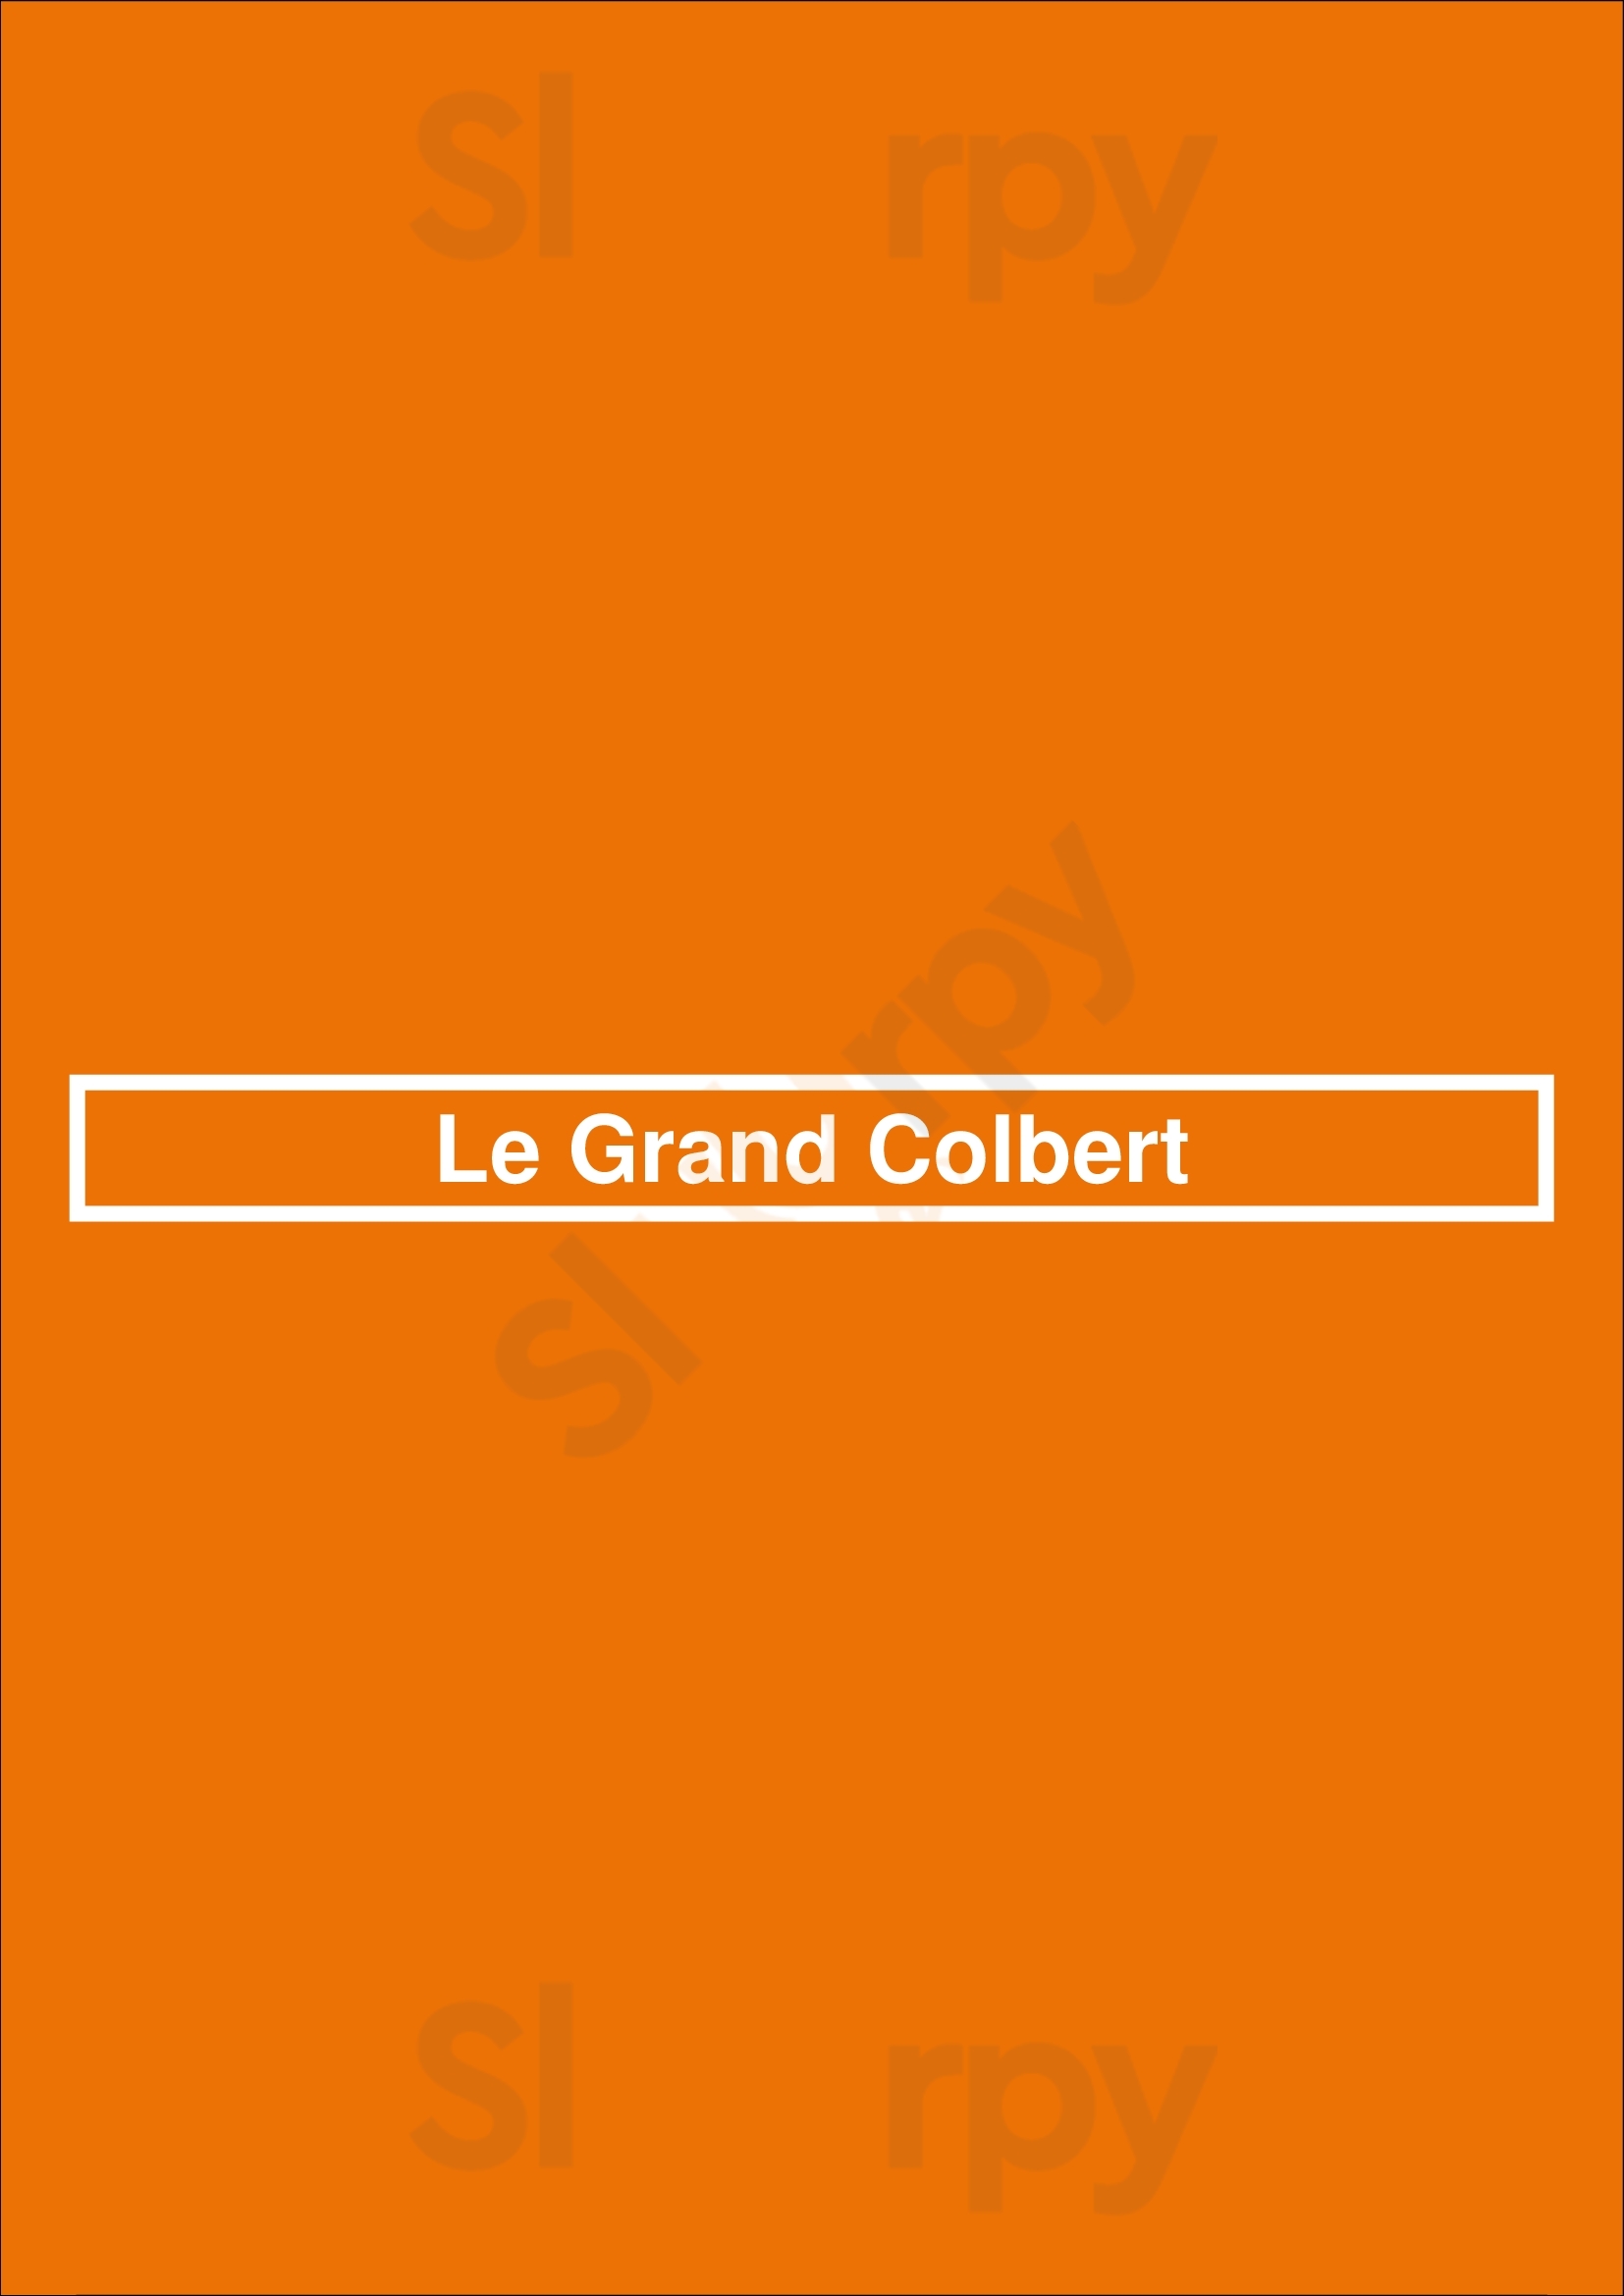 Le Grand Colbert Paris Menu - 1